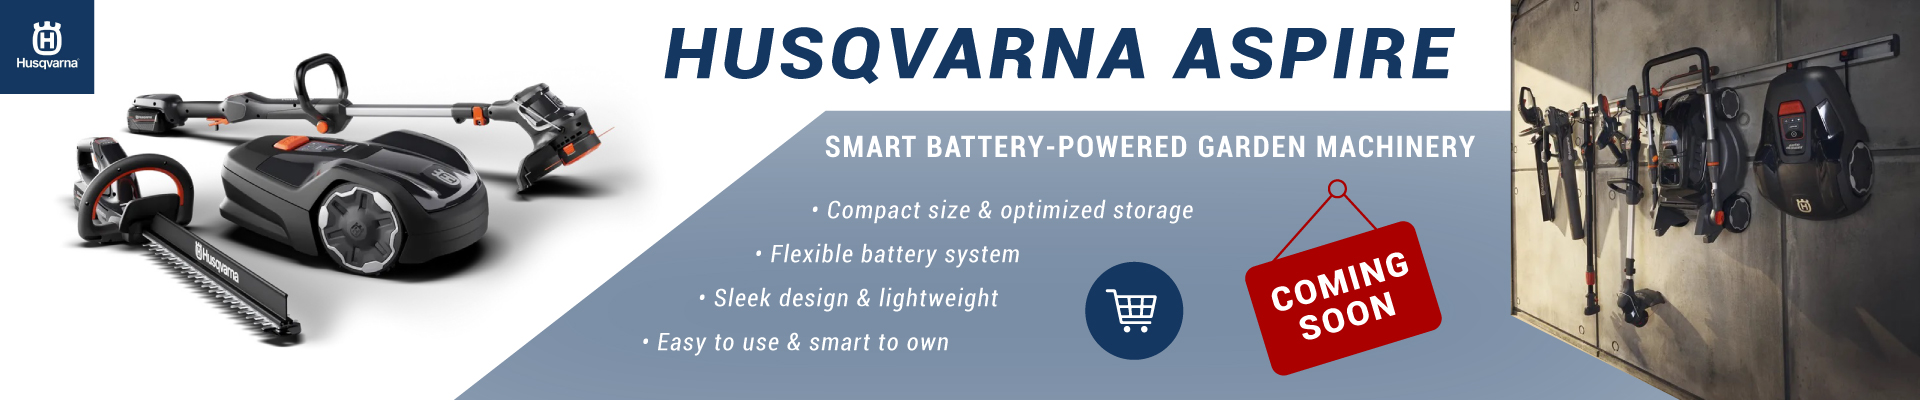 Husqvarna Aspire Range of Smart Battery-Powered Garden Machinery